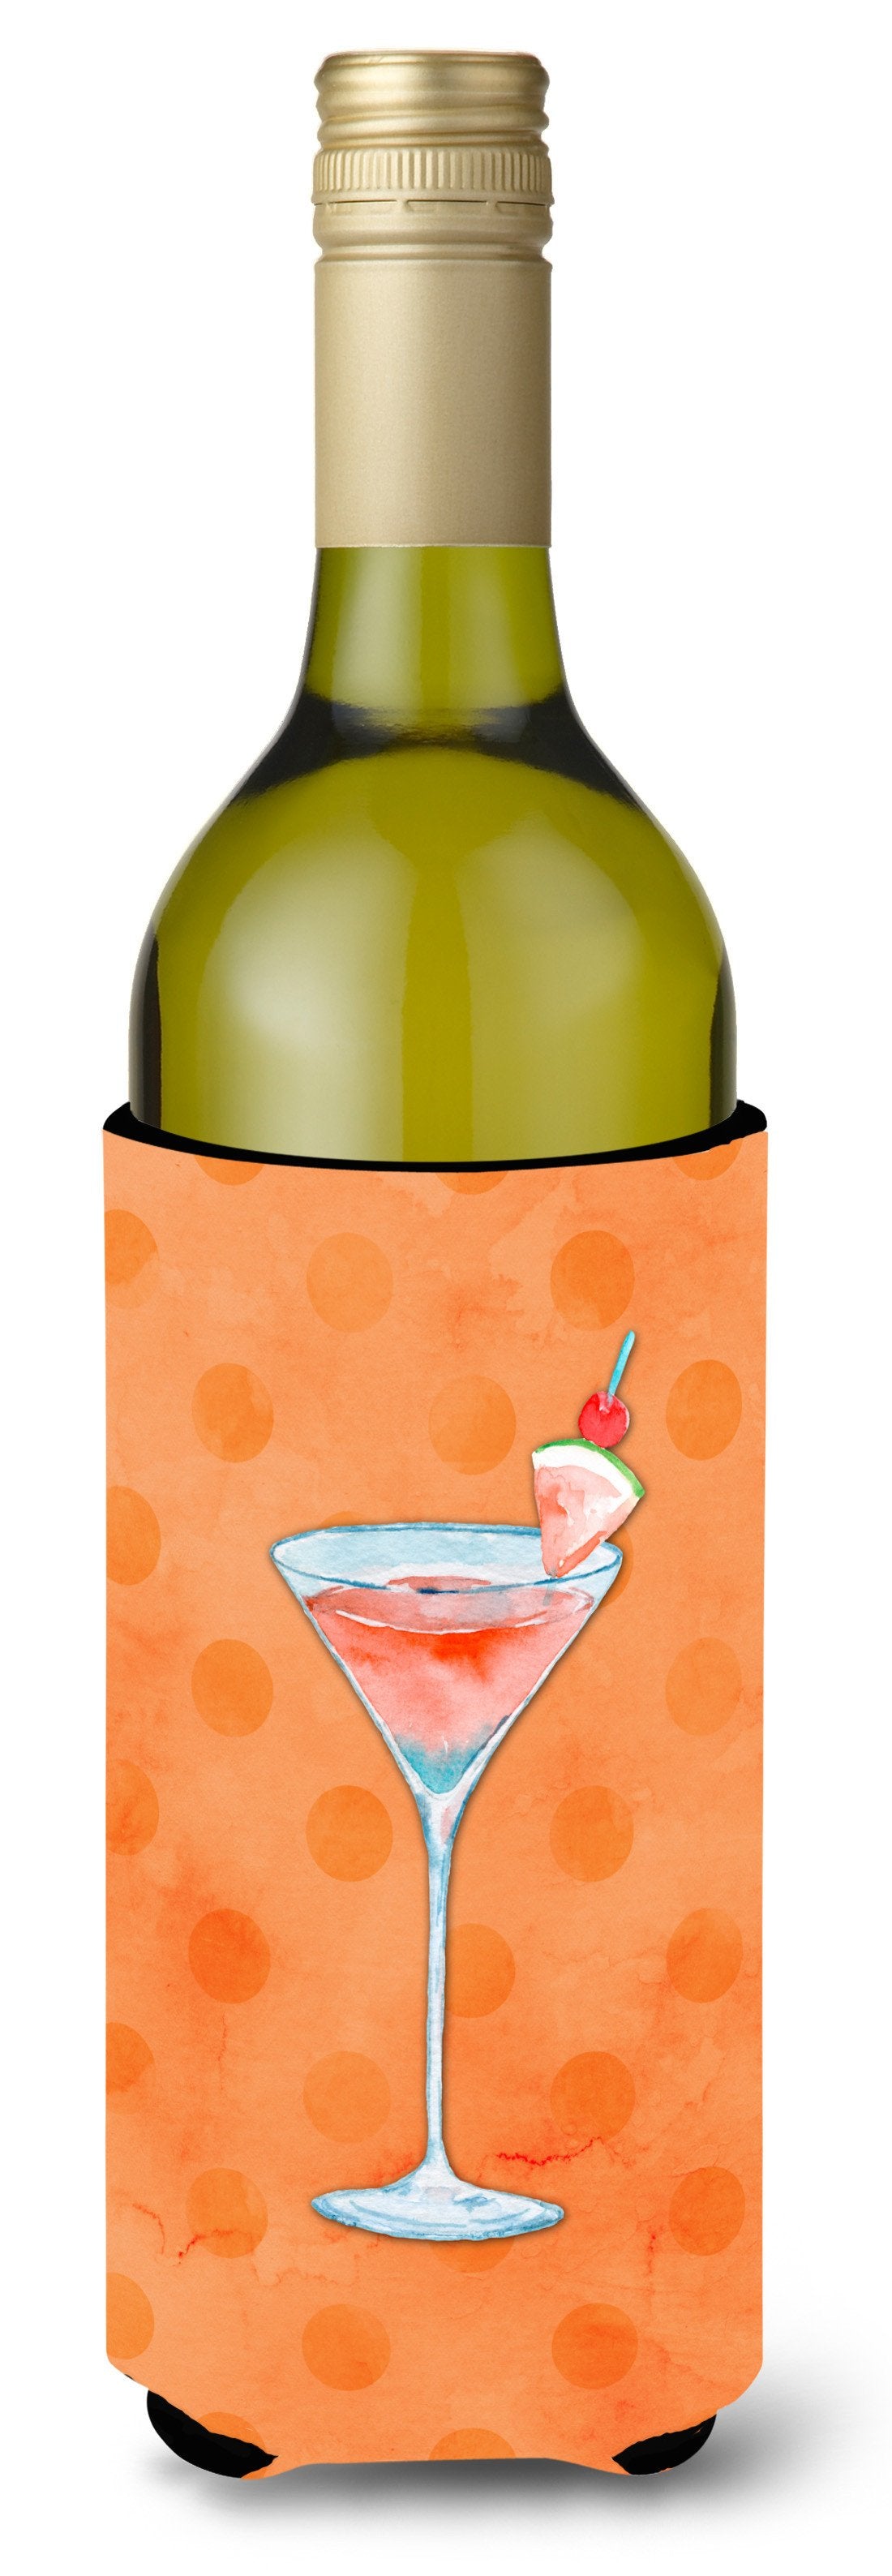 Summer Martini Orange Polkadot Wine Bottle Beverge Insulator Hugger BB8218LITERK by Caroline's Treasures